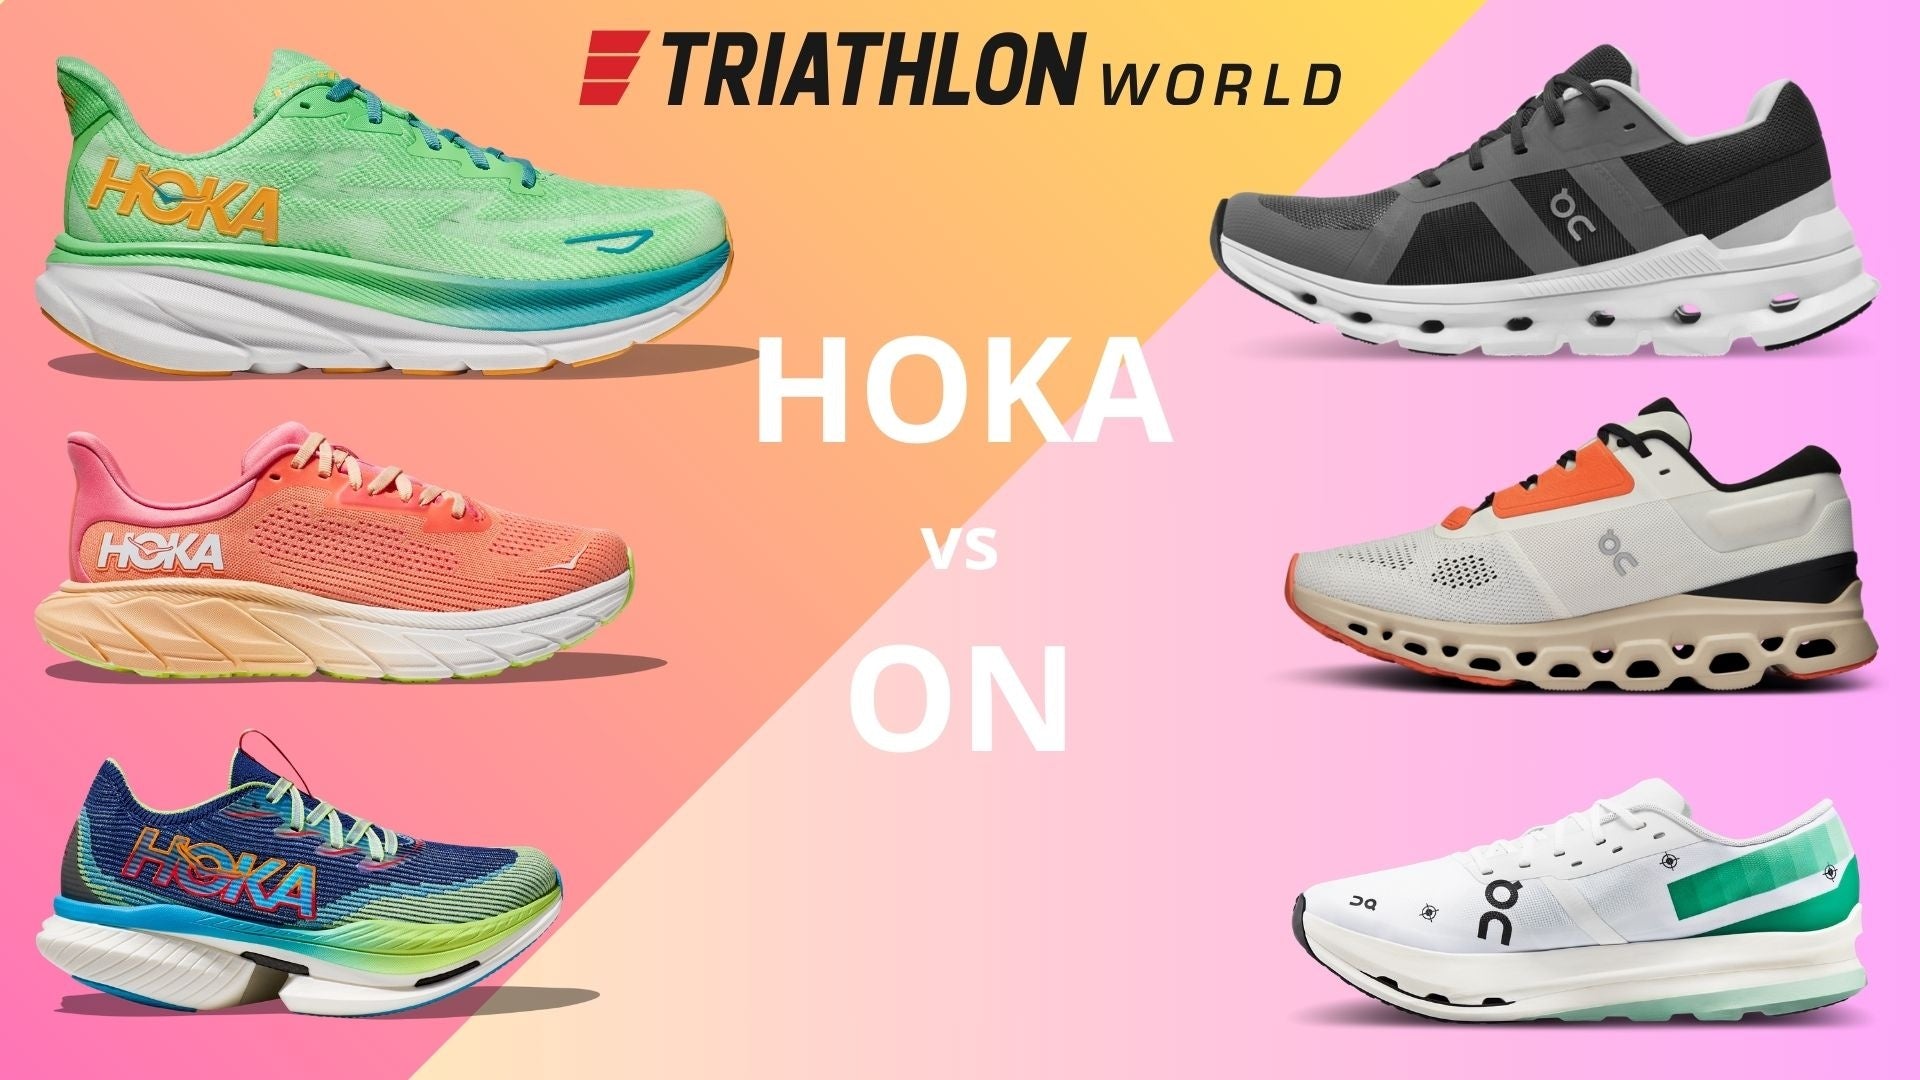 Hoka vs On: De eerlijke mening van TriathlonWorld